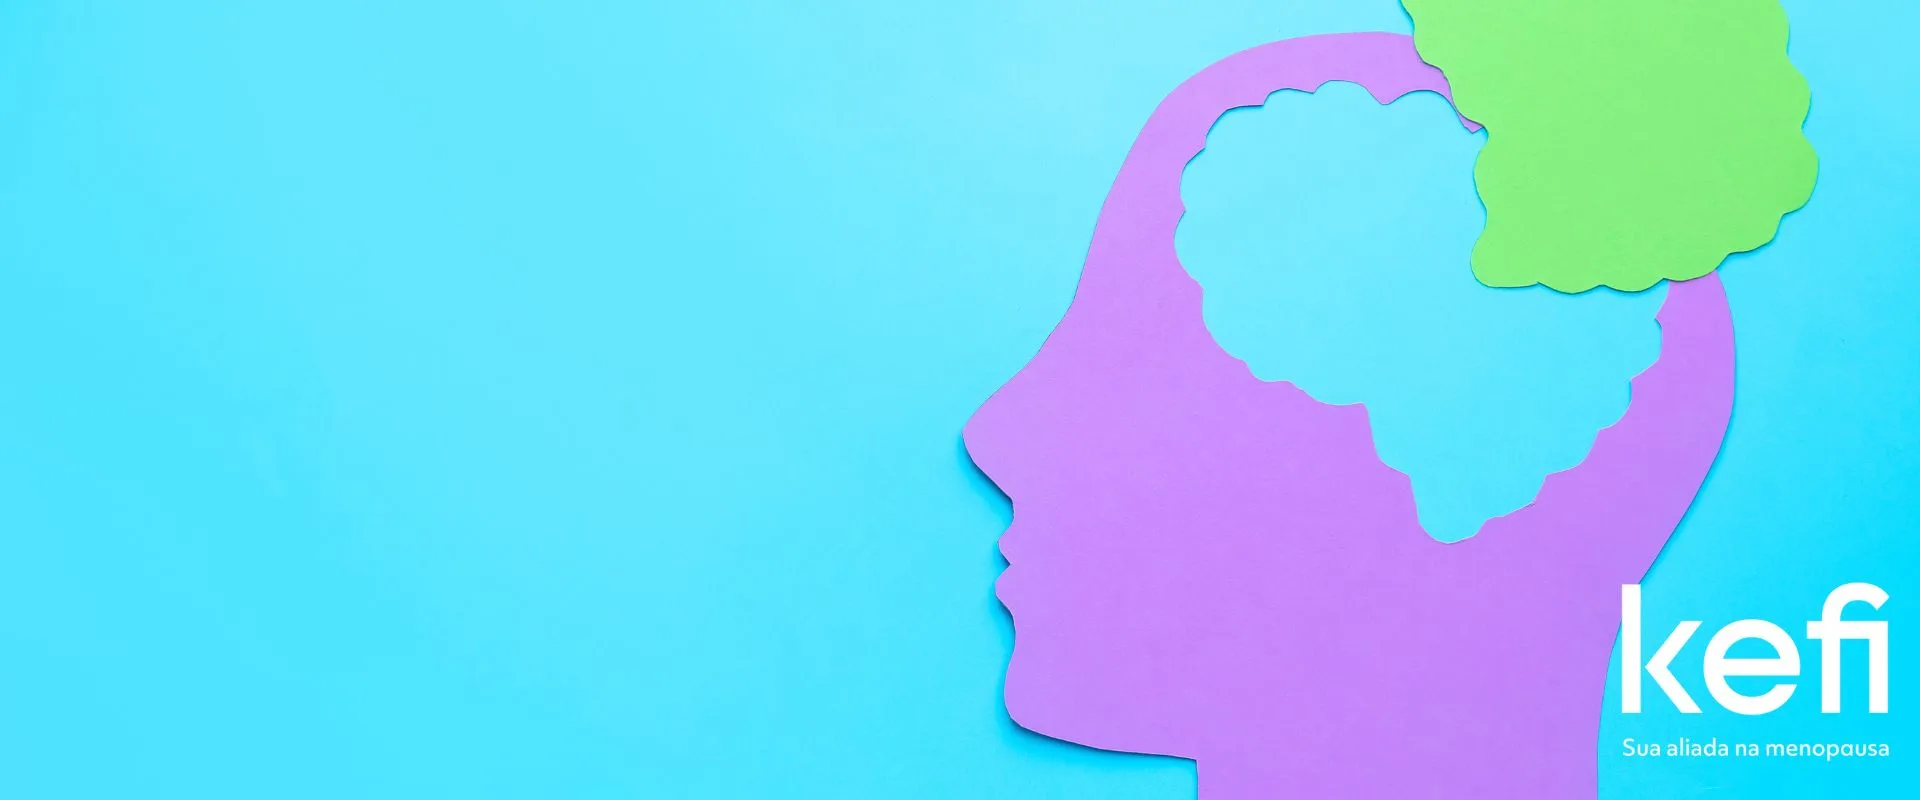 Silhueta colorida de uma mulher representando o bem-estar cognitivo e emocional durante a menopausa, destacando-se contra um fundo azul. A imagem simboliza apoio e equilíbrio para a saúde feminina, alinhando-se com o tema da melhoria da memória e saúde mental na menopausa oferecida pela fosfatidilserina do suplemento Balance.